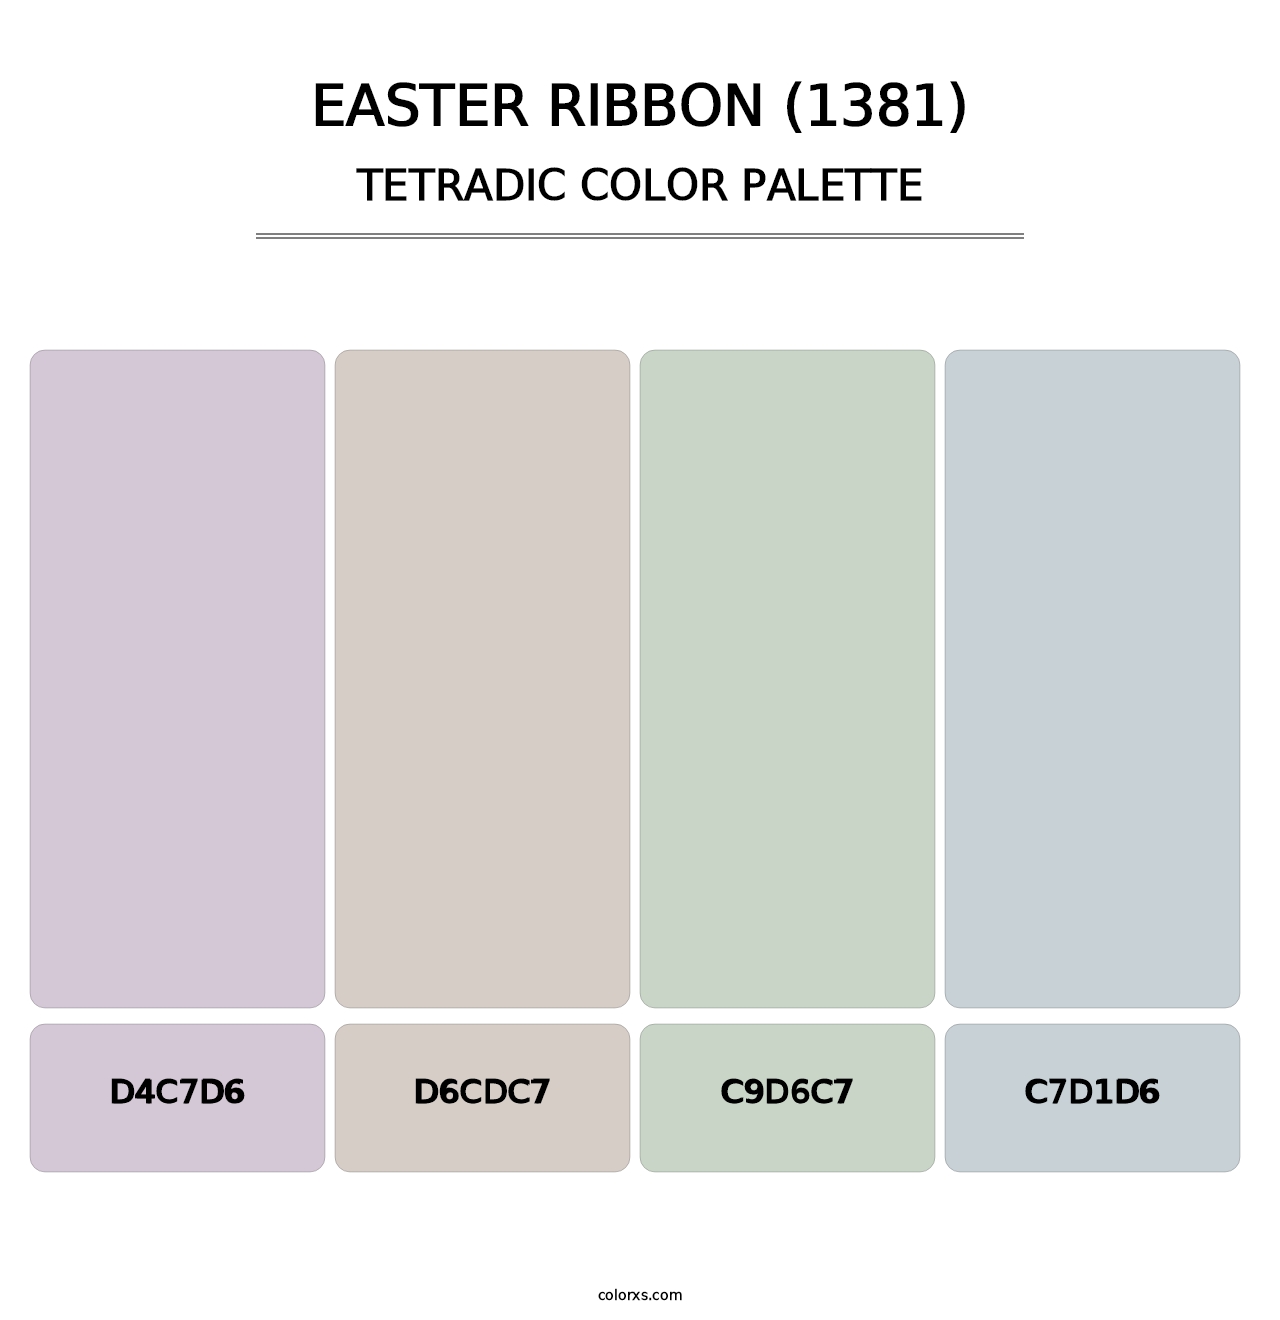 Easter Ribbon (1381) - Tetradic Color Palette